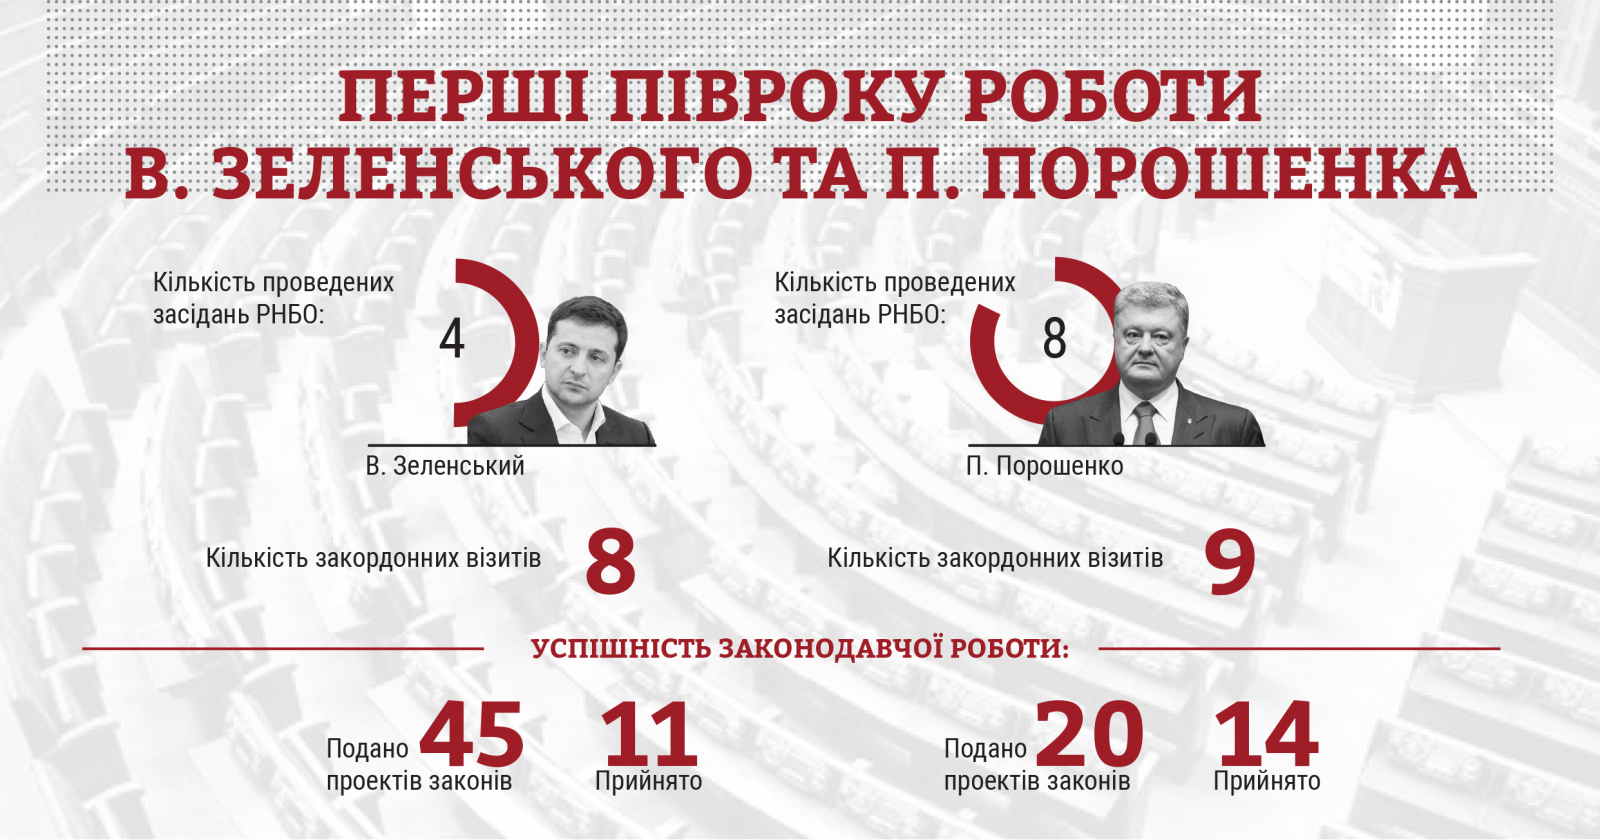 Комитет избирателей Украины проанализировал работу действующей и предыдущей власти, фото: КИУ